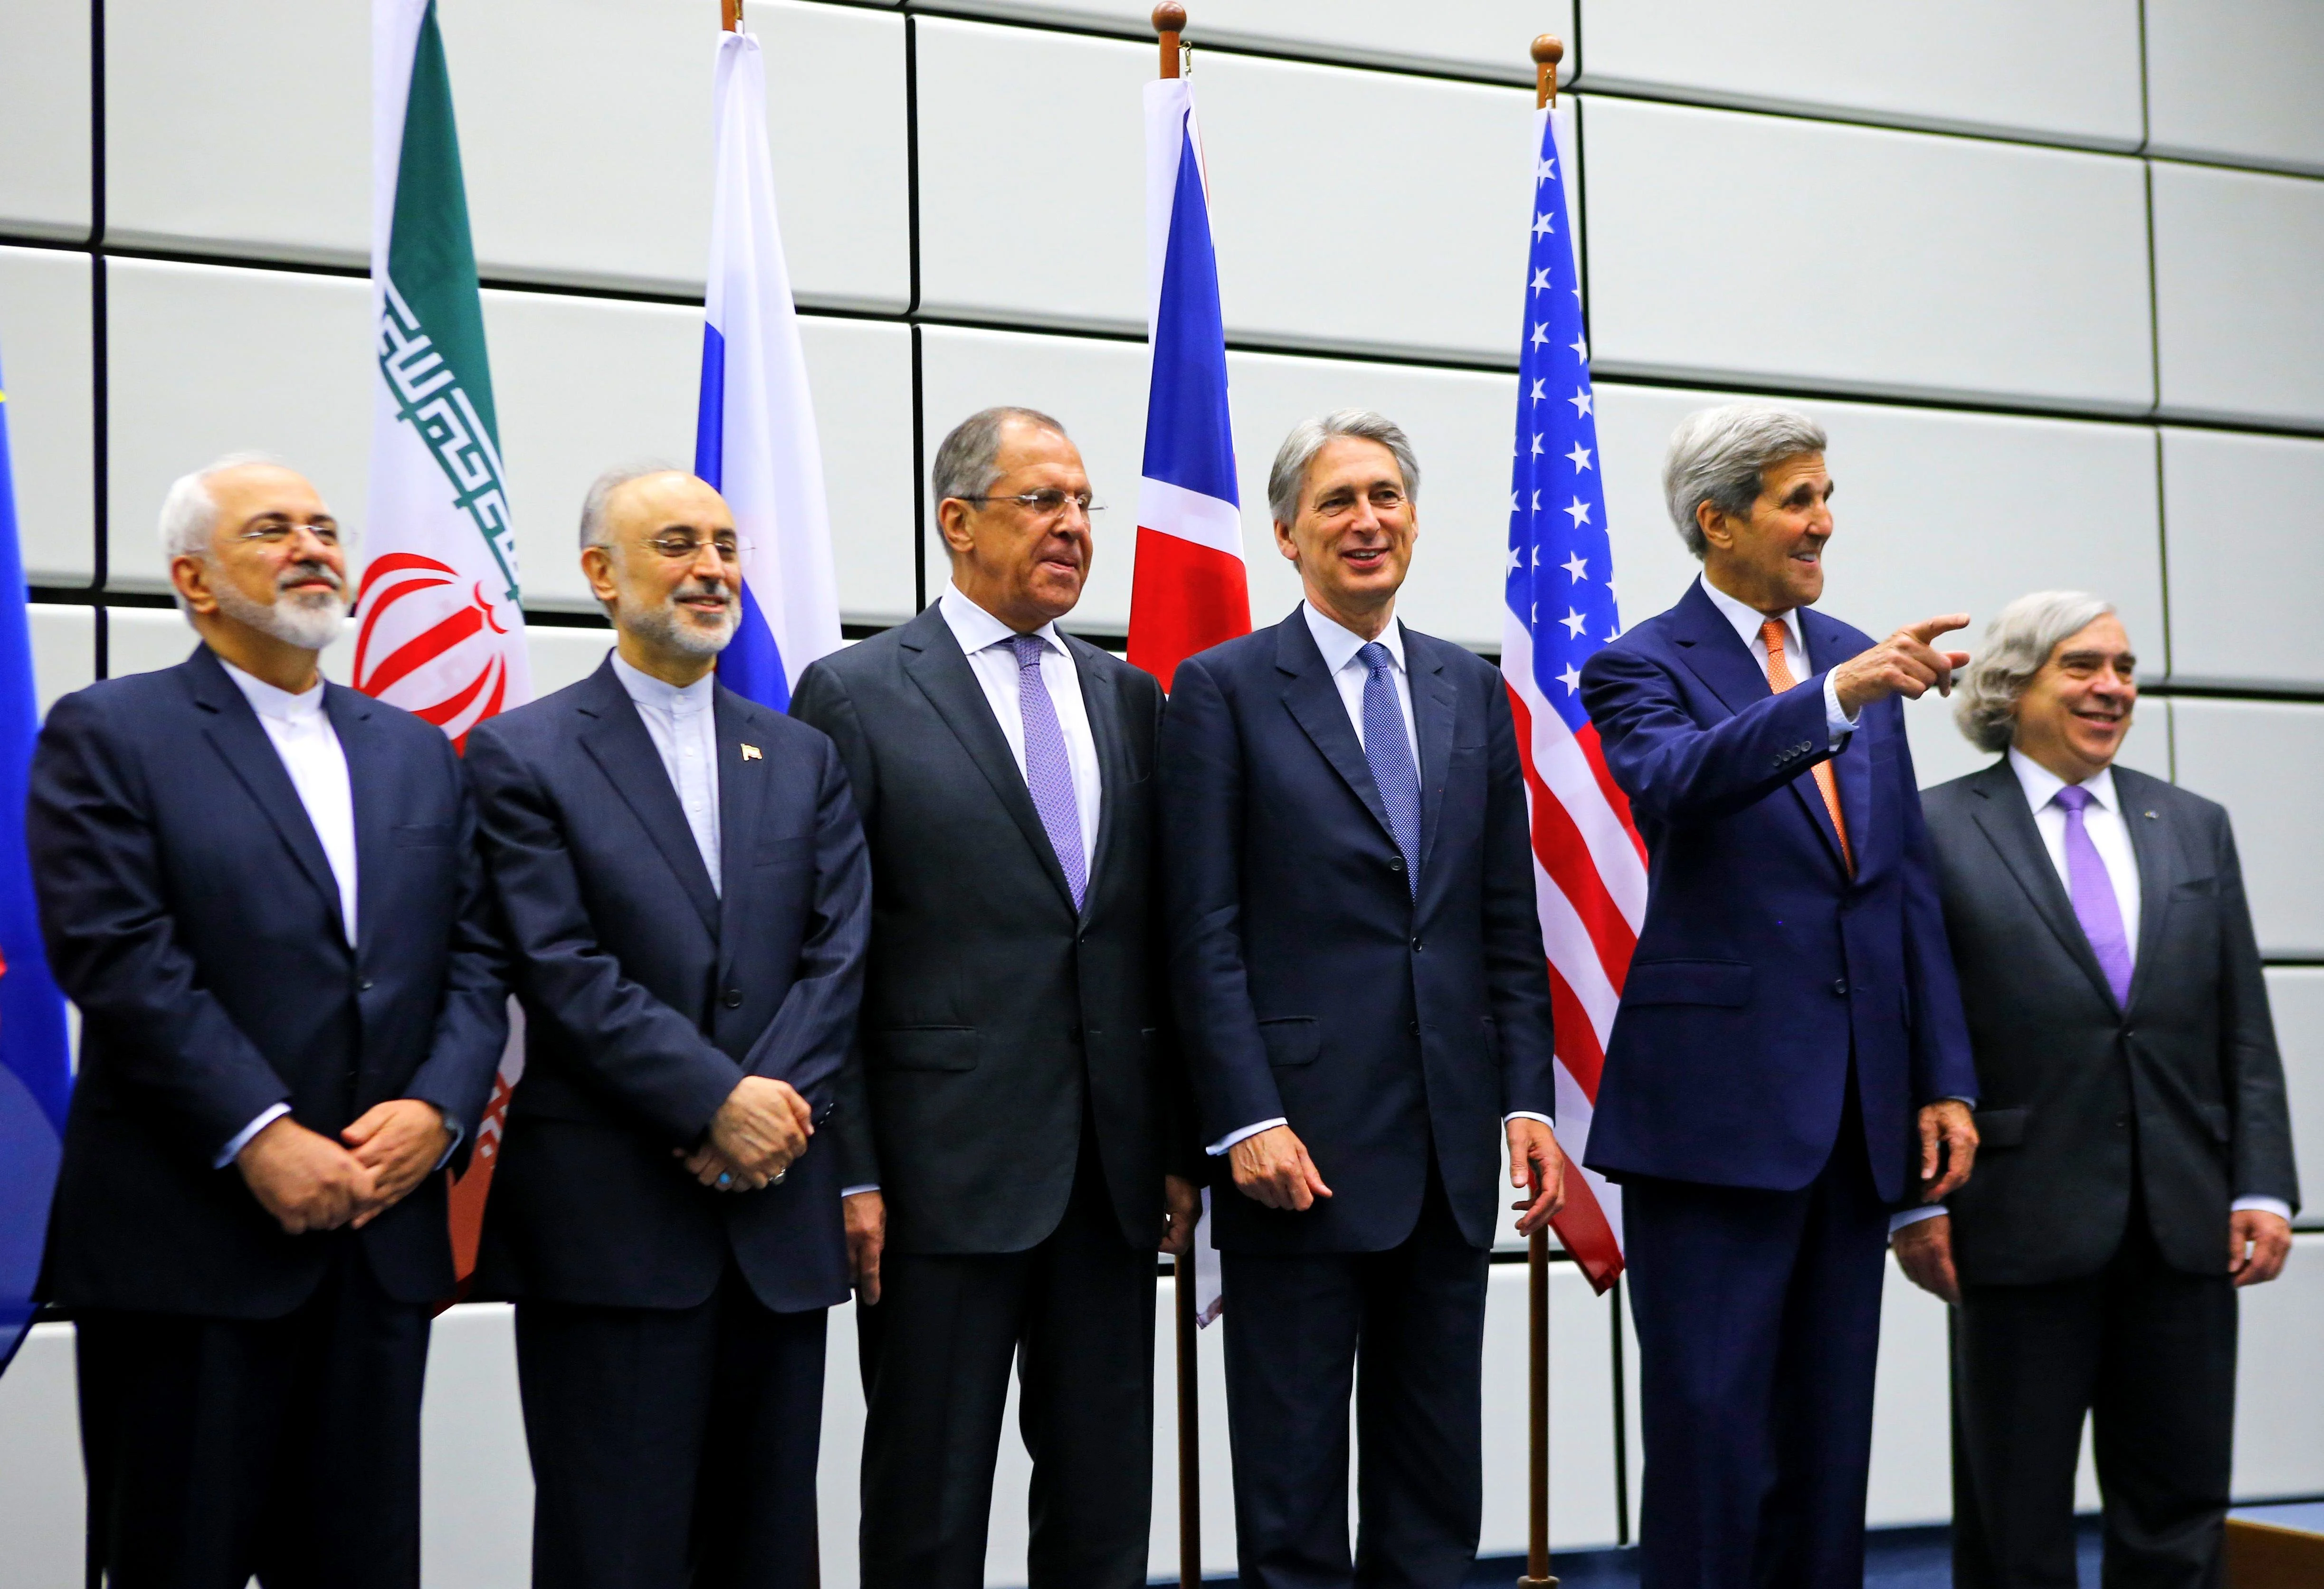 שרי החוץ של איראן והמעצמות בחתימת הסכם הגרעין ביולי 2015